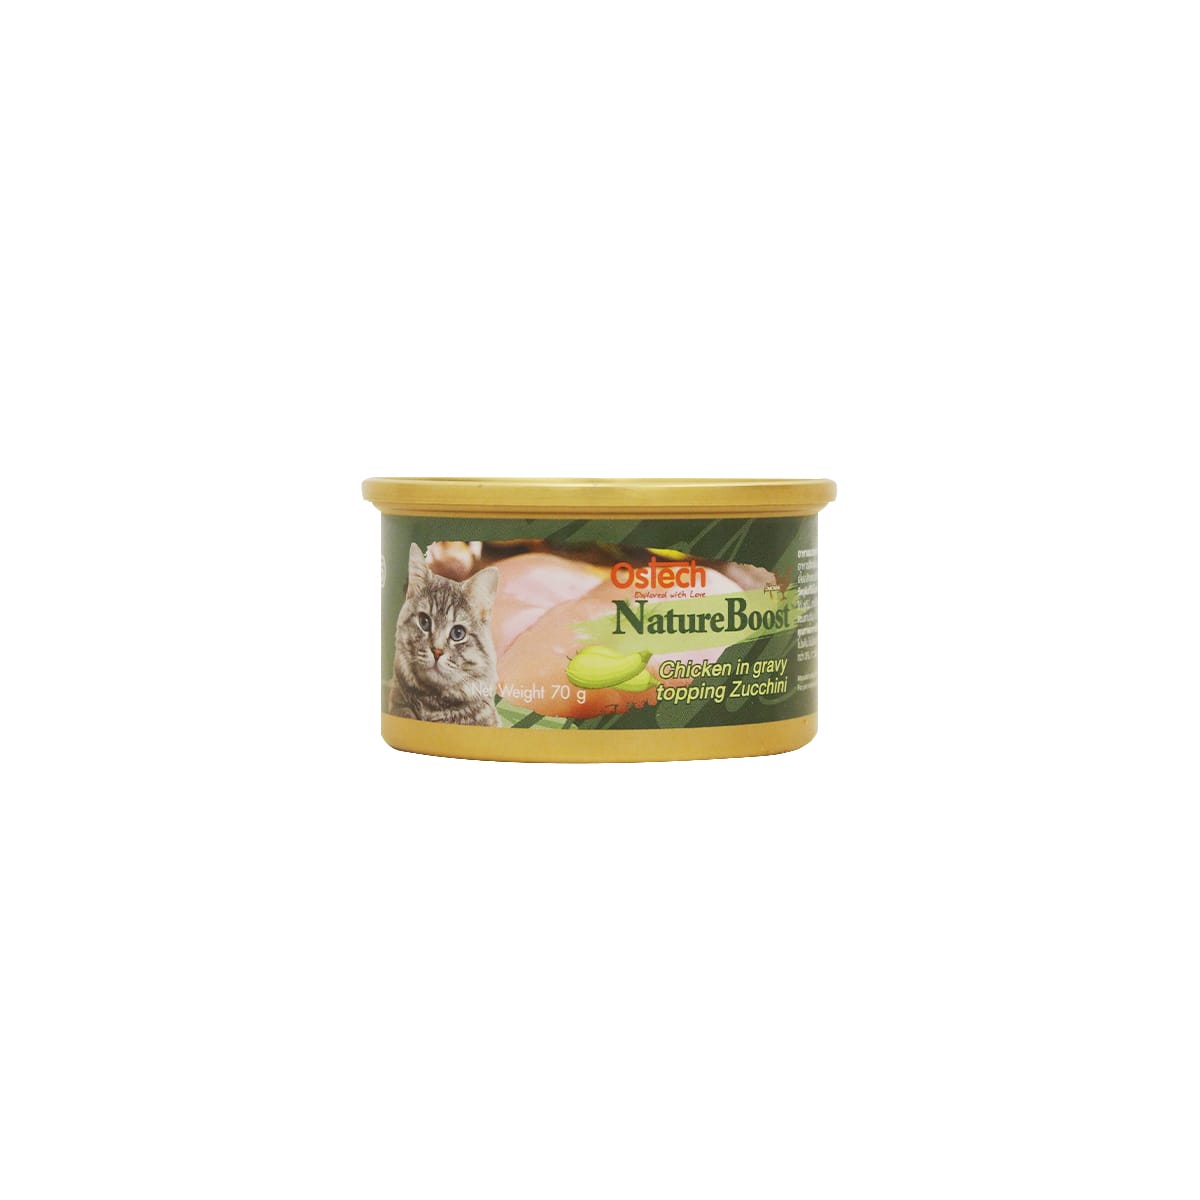 Ostech ออสเทค อาหารเปียก แบบกระป๋อง สำหรับแมว สูตรไก่ในน้ำเกรวี่หน้าซูกินี่ 70 g_1